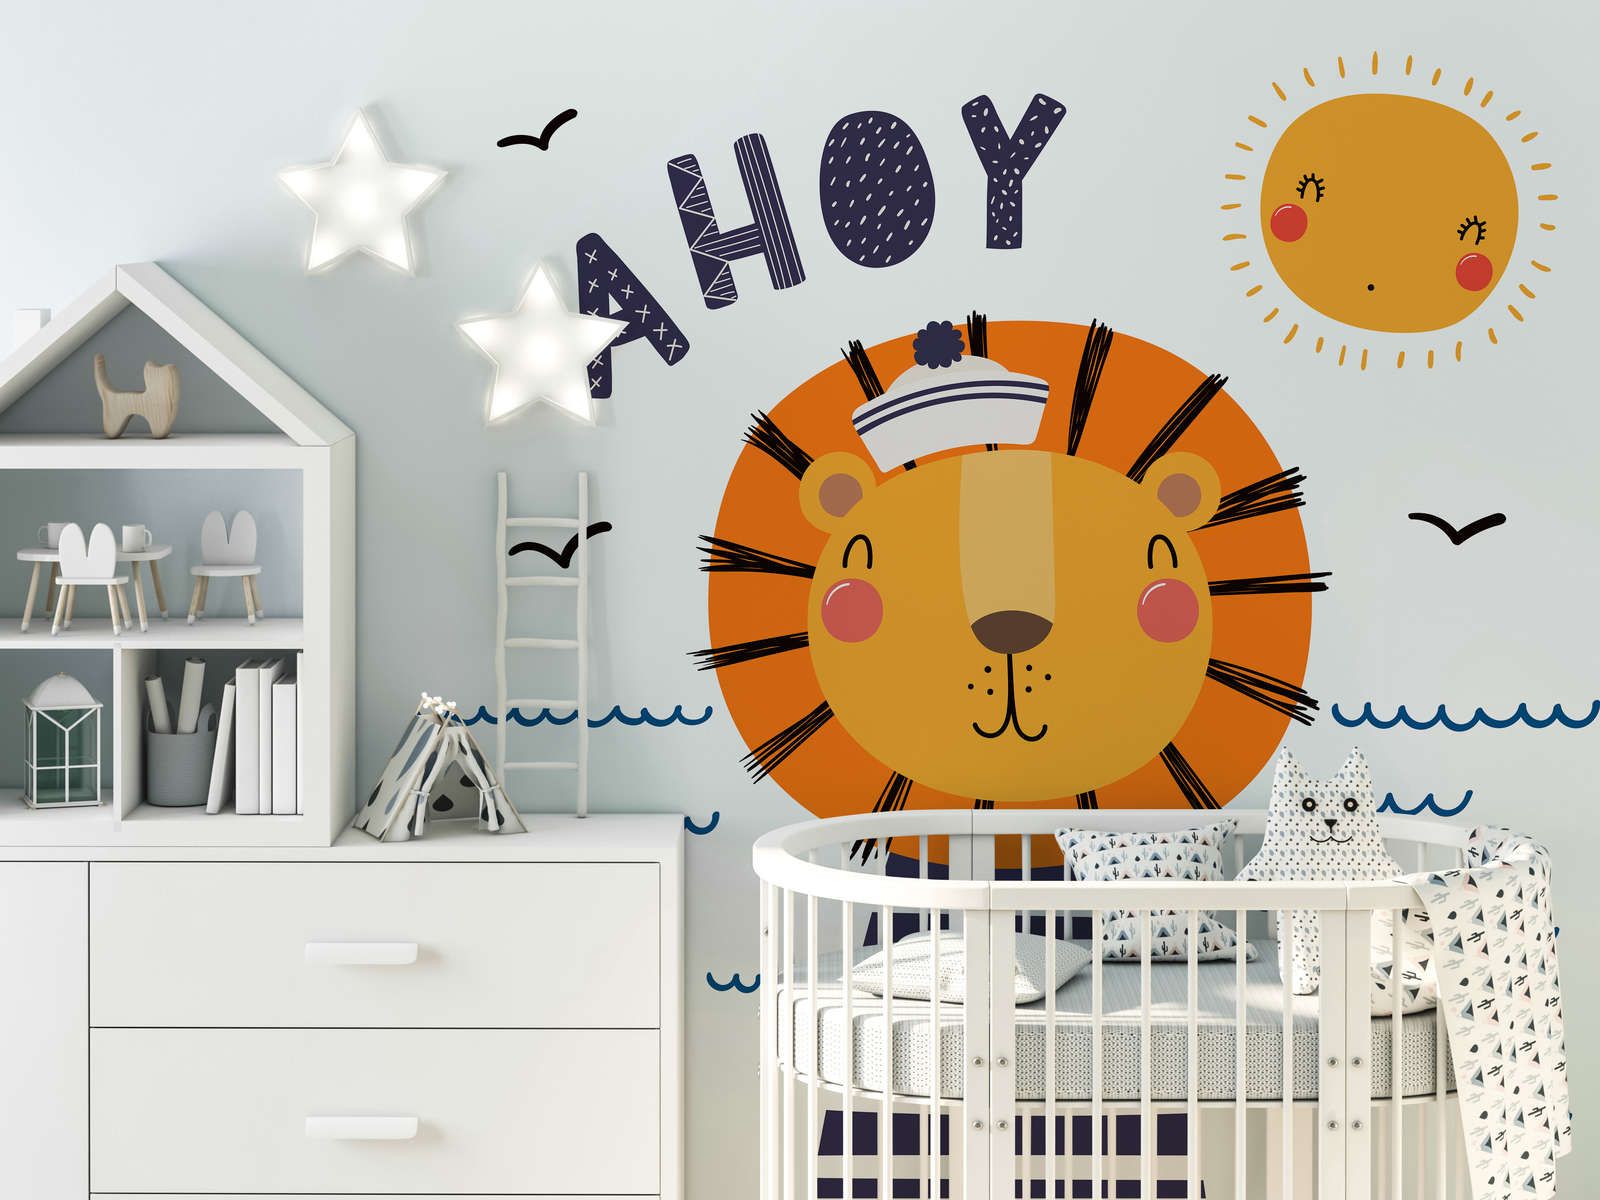             Fototapete fürs Kinderzimmer mit Löwen-Pirat – Glattes & perlmutt-schimmerndes Vlies
        